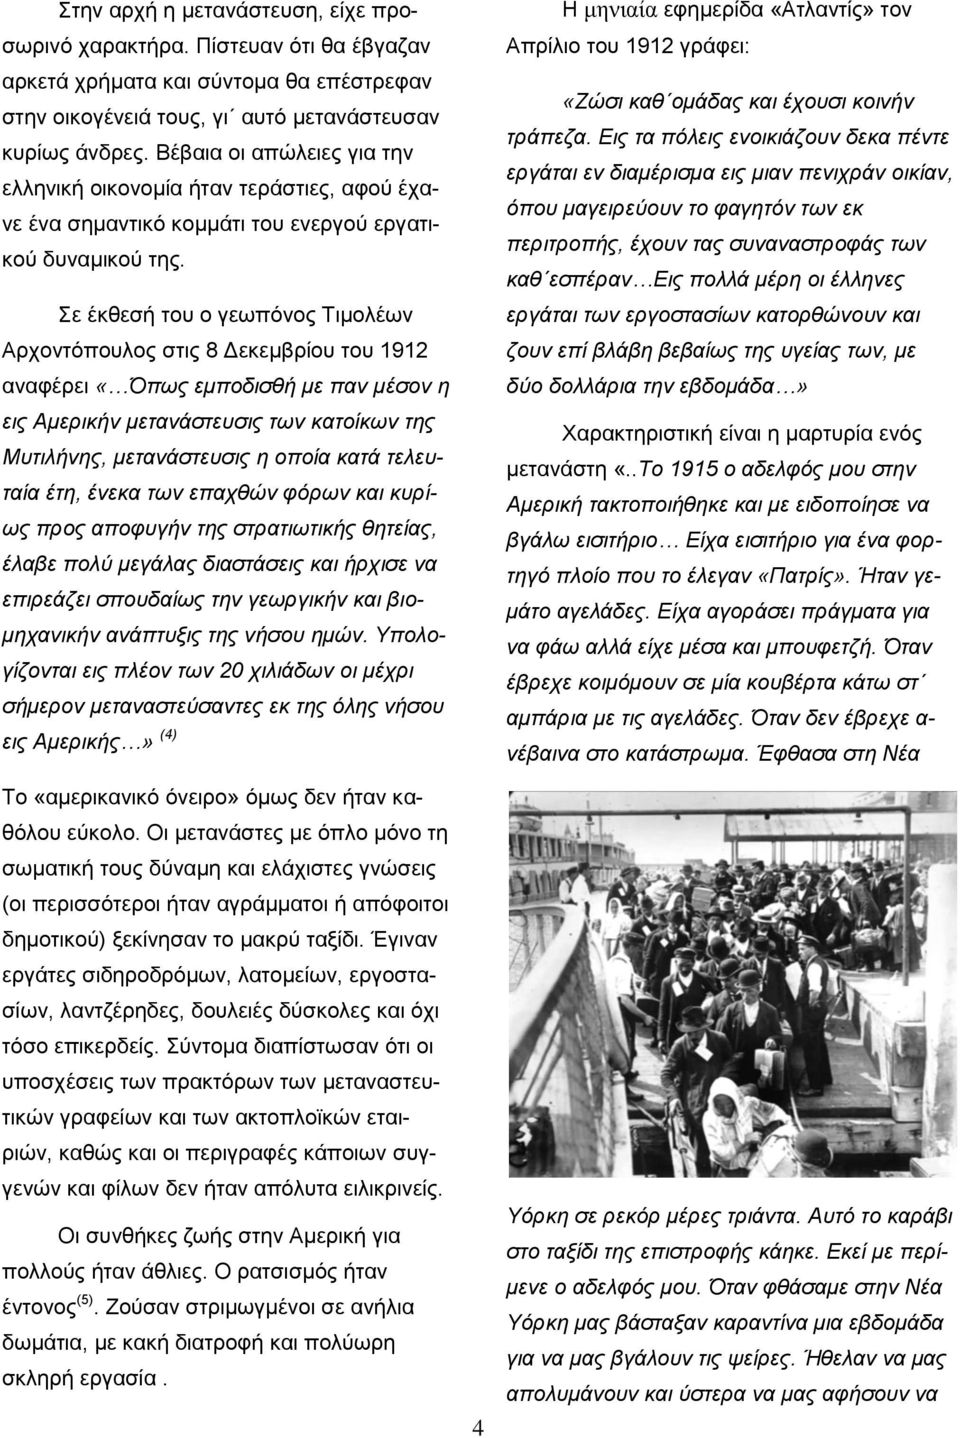 Σε έκθεσή του ο γεωπόνος Τιμολέων Αρχοντόπουλος στις 8 Δεκεμβρίου του 1912 αναφέρει «Όπως εμποδισθή με παν μέσον η εις Αμερικήν μετανάστευσις των κατοίκων της Μυτιλήνης, μετανάστευσις η οποία κατά